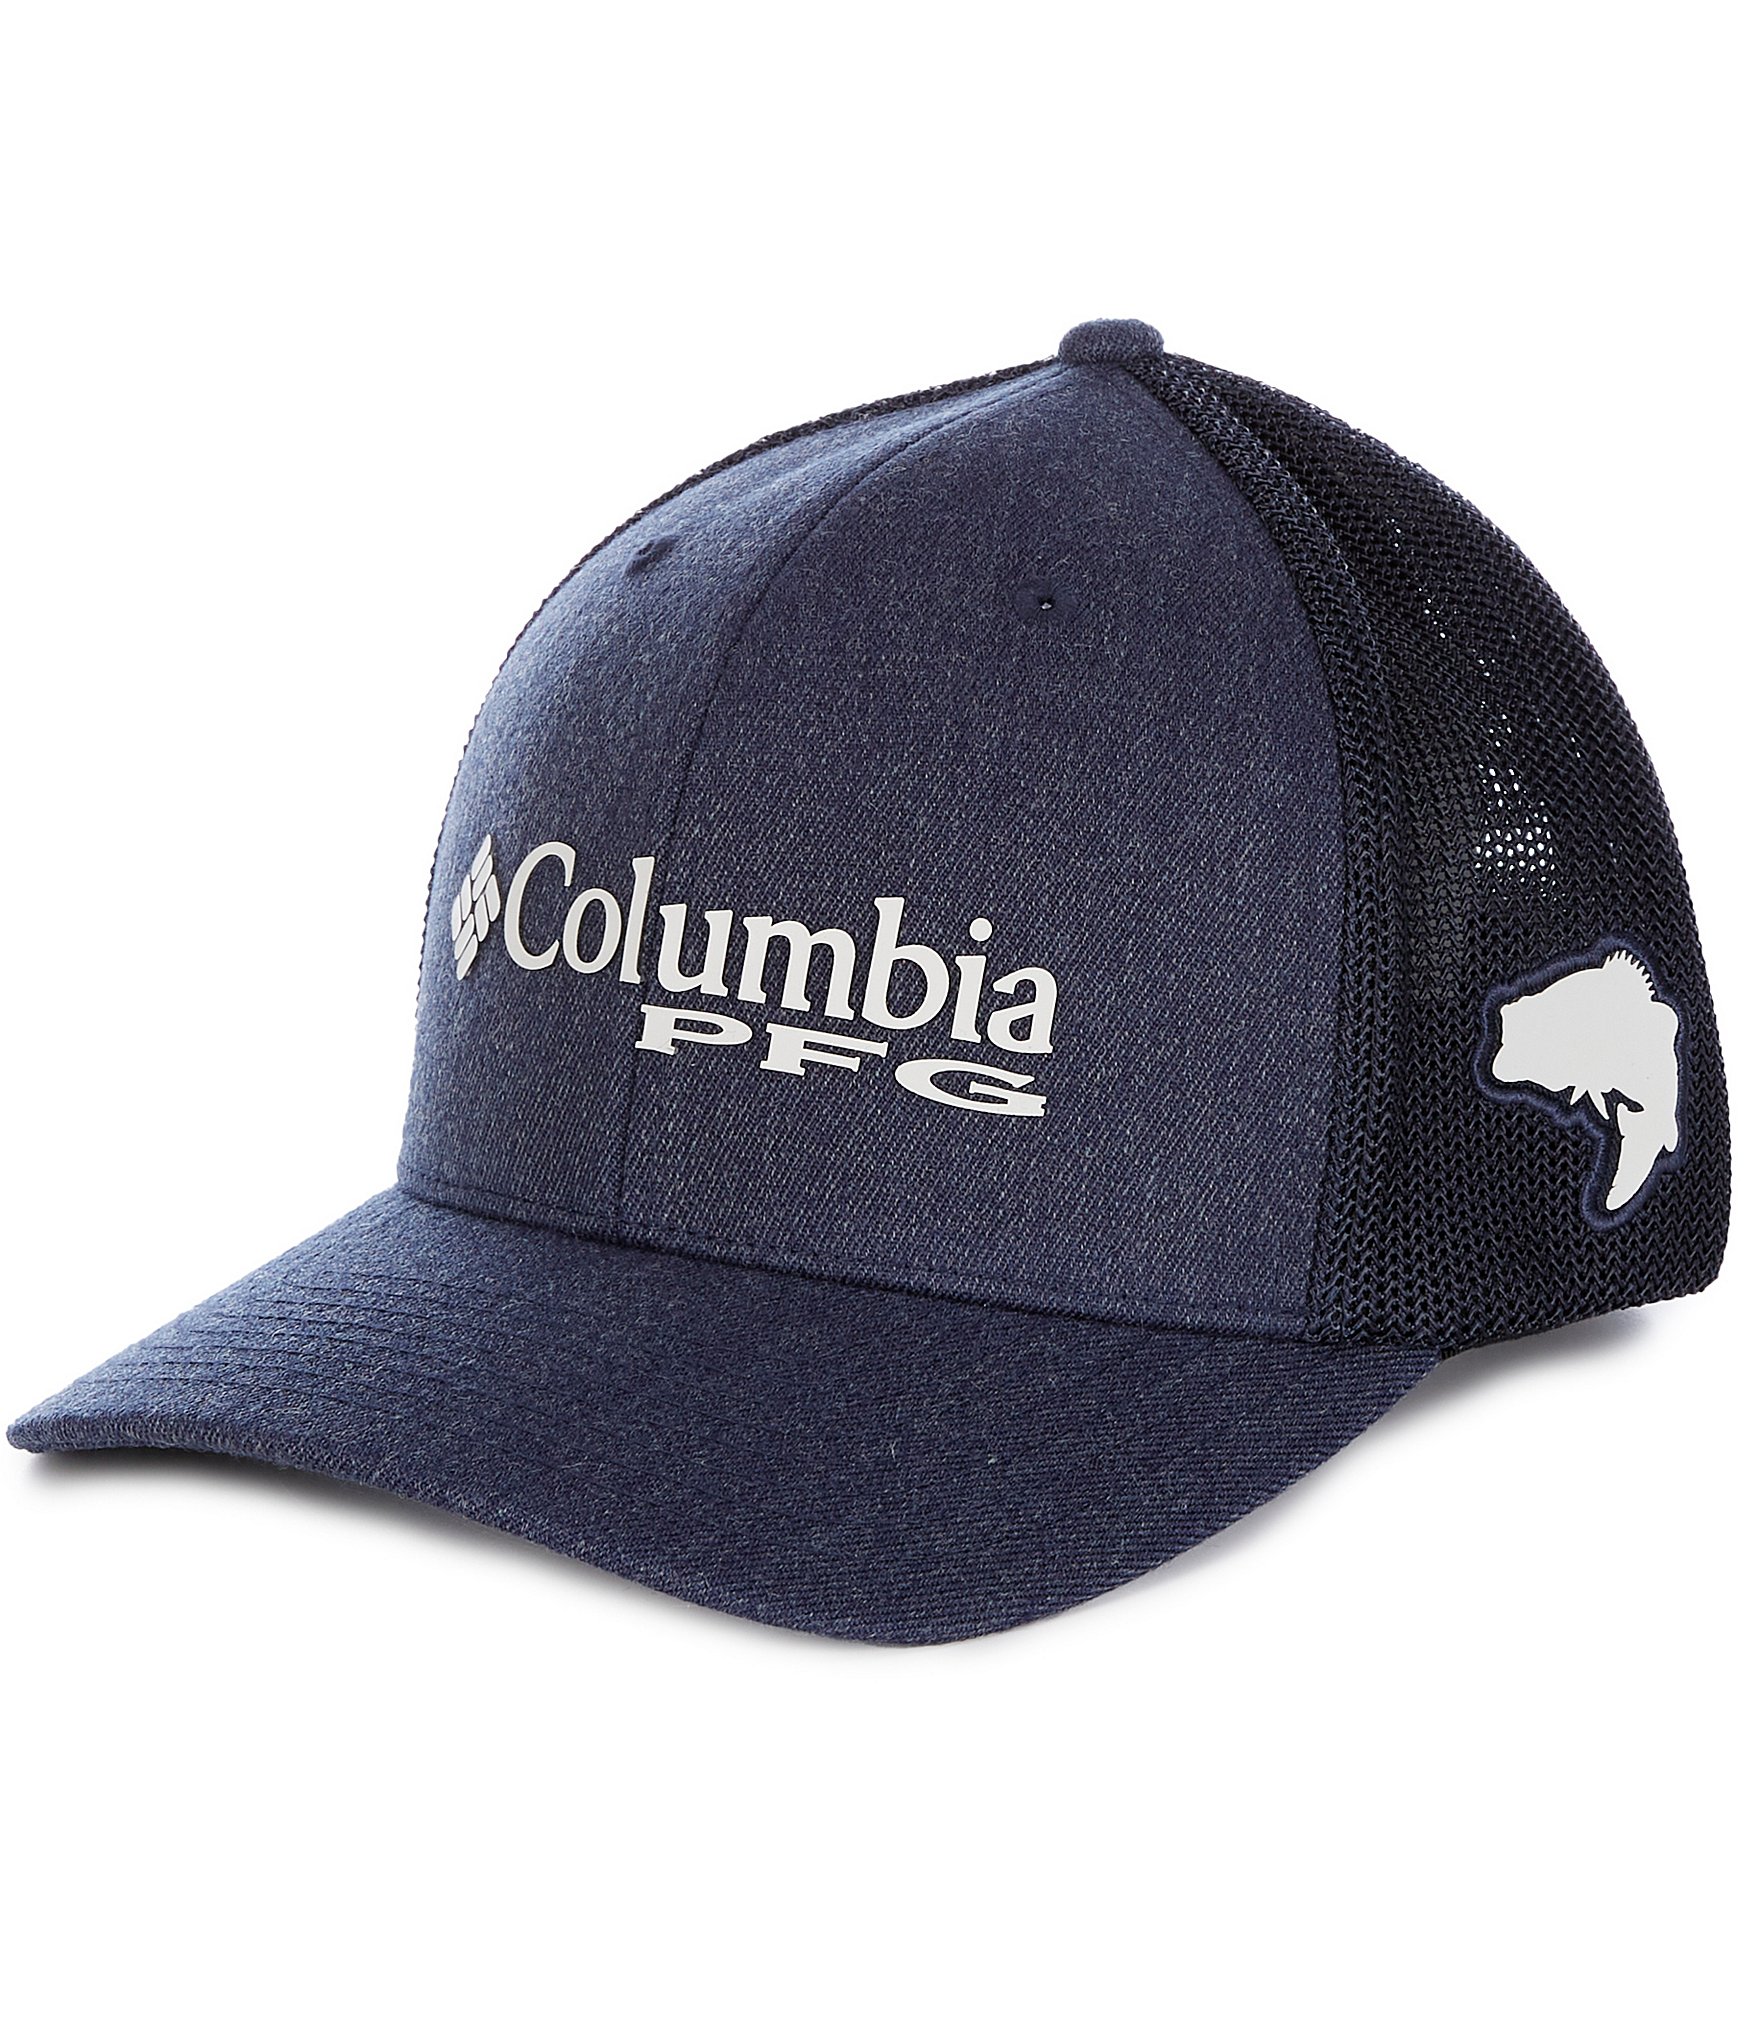 Columbia PFG Mesh Trucker Cap